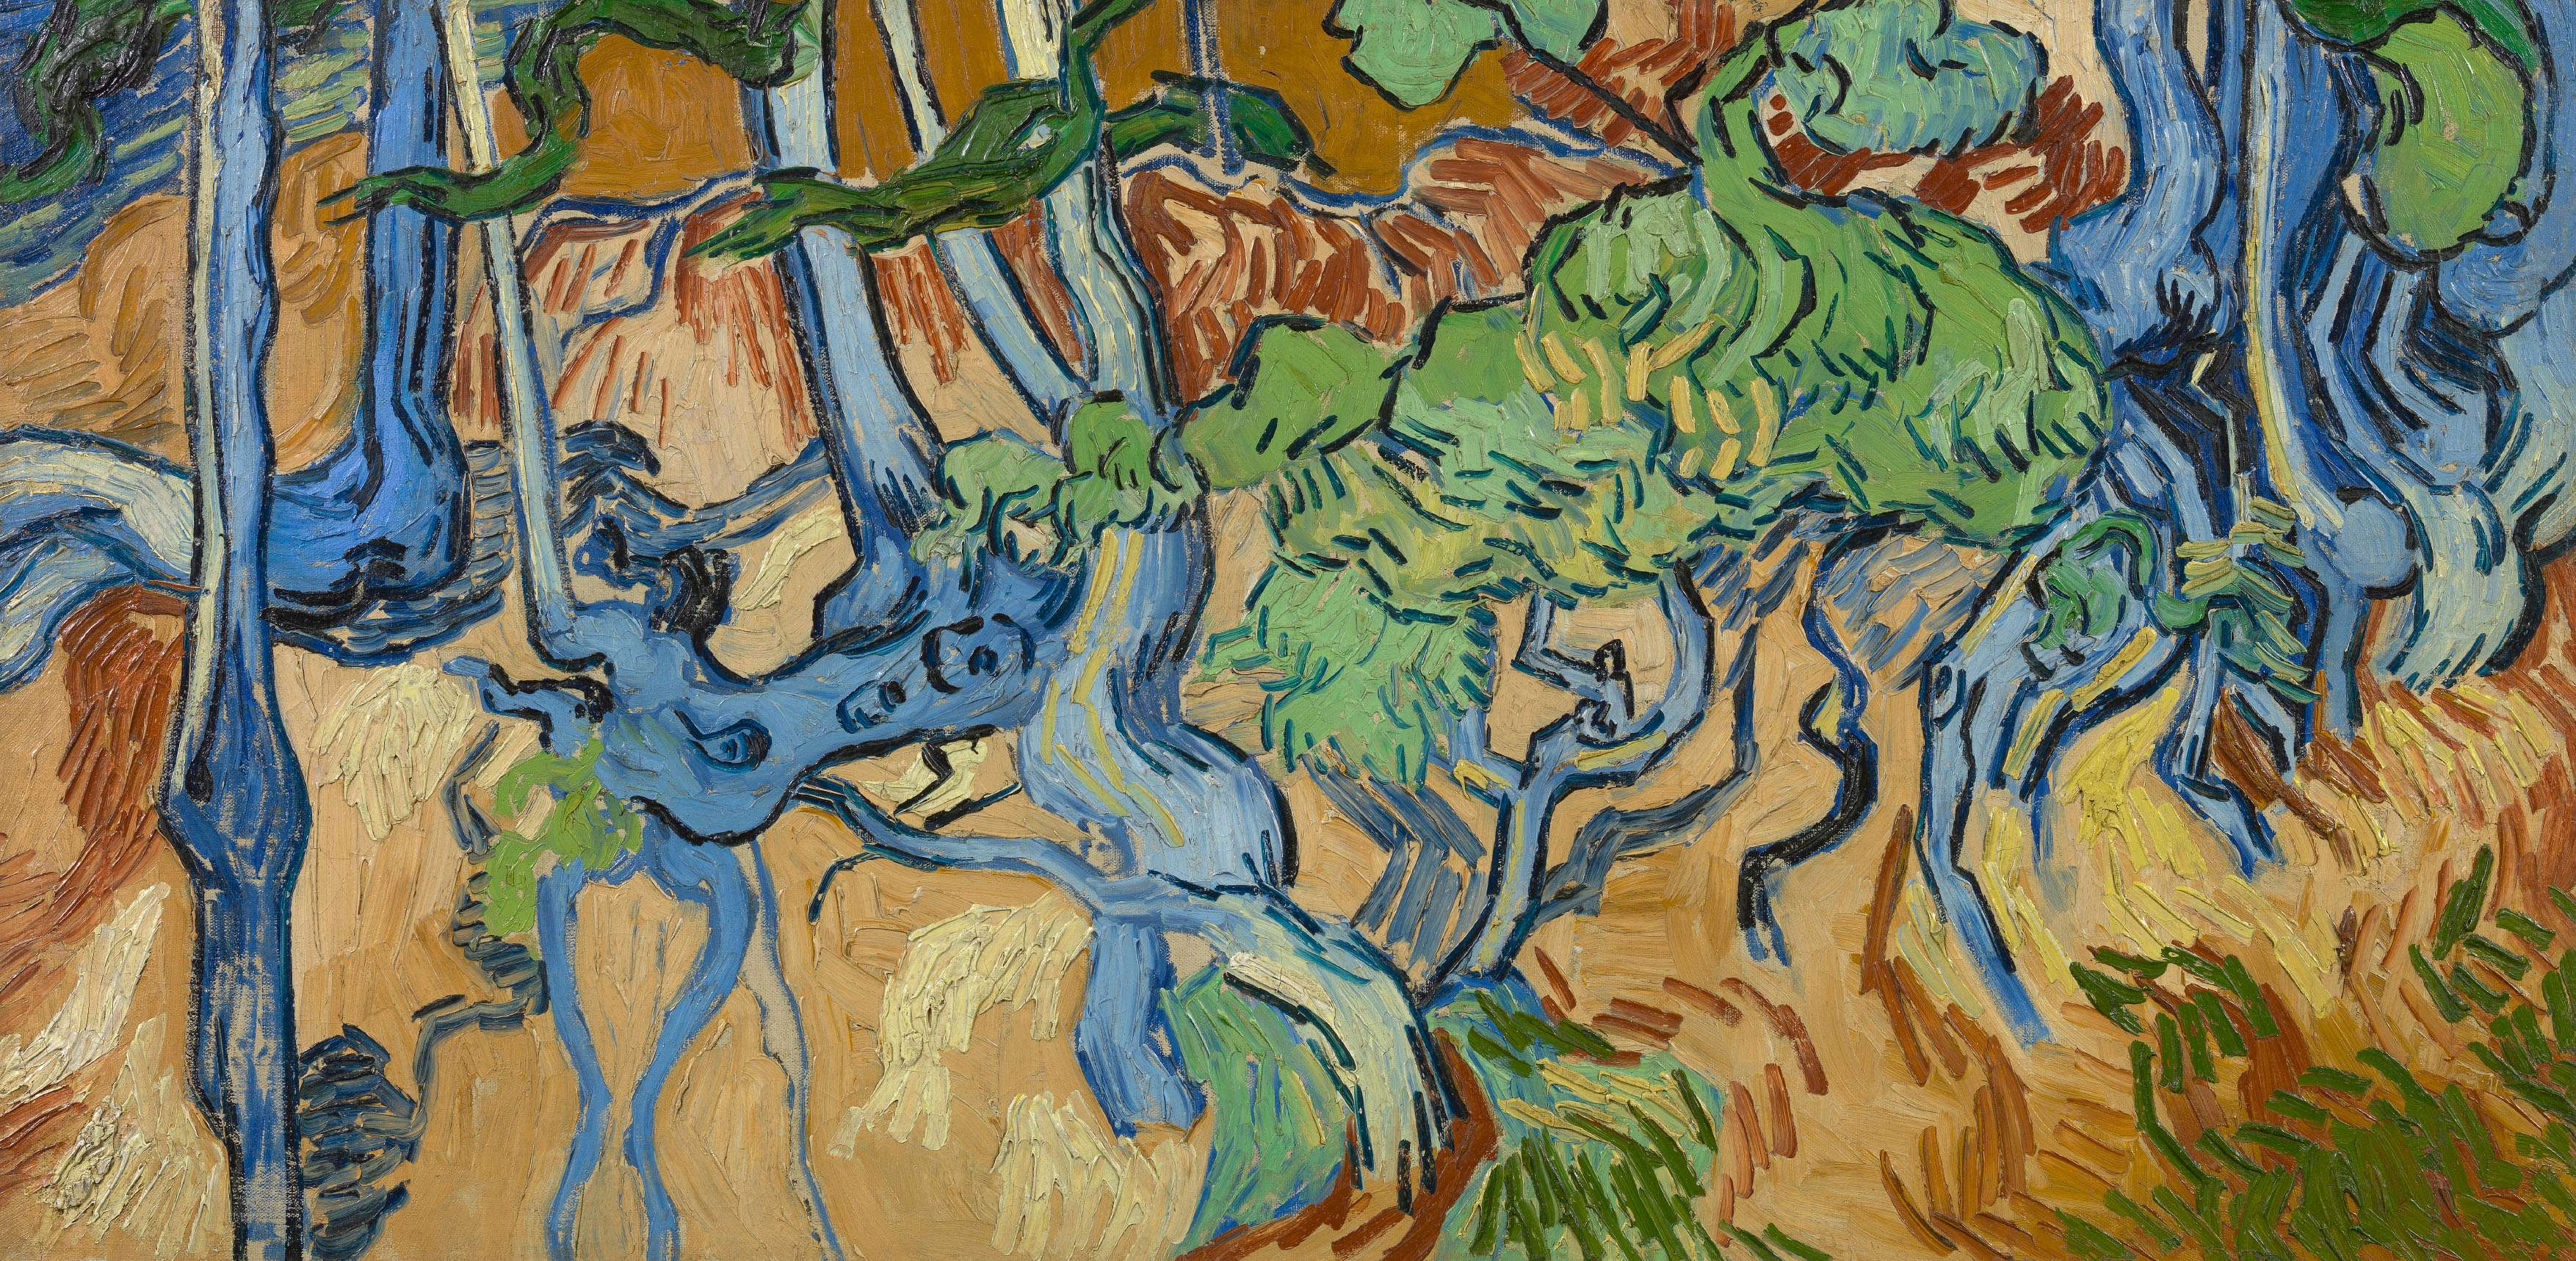 ゴッホ最後の作品《木の根と幹》が描かれた場所を特定。「非常に信憑性 